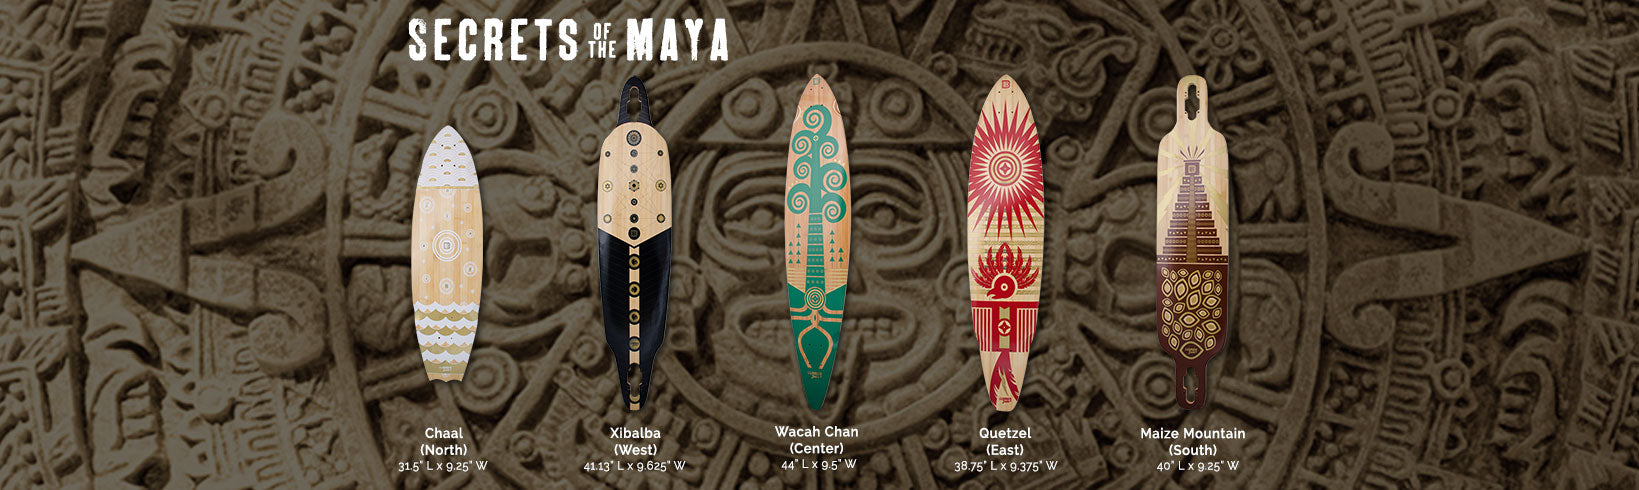 Secrets of the Maya Longboard Serie